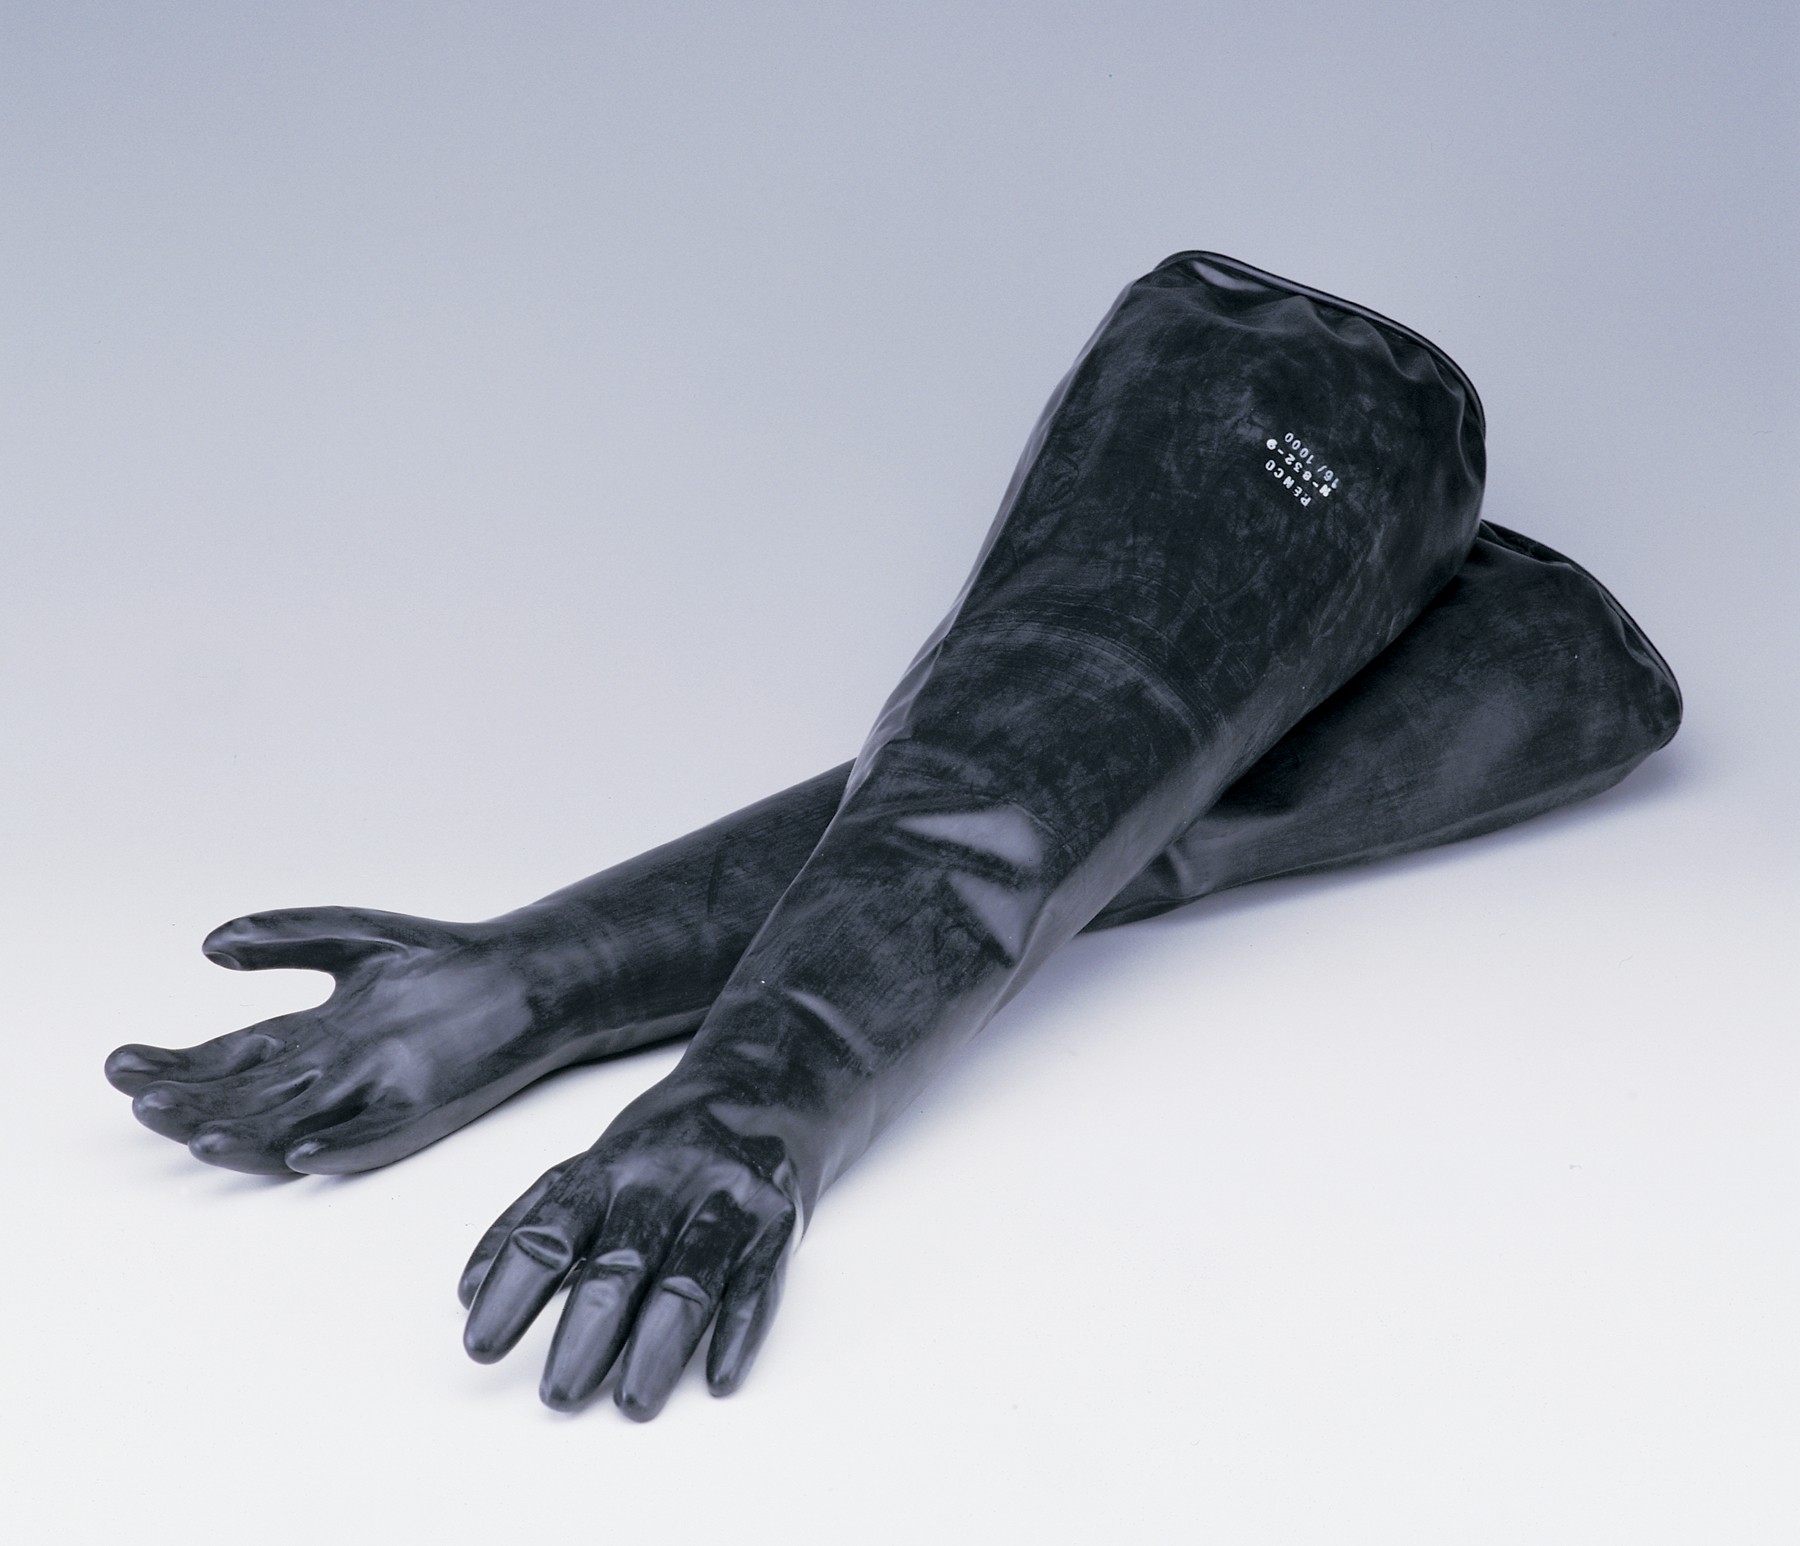 SP Bel-Art Glove Box Neoprene Sleeved Gloves; Size 10 